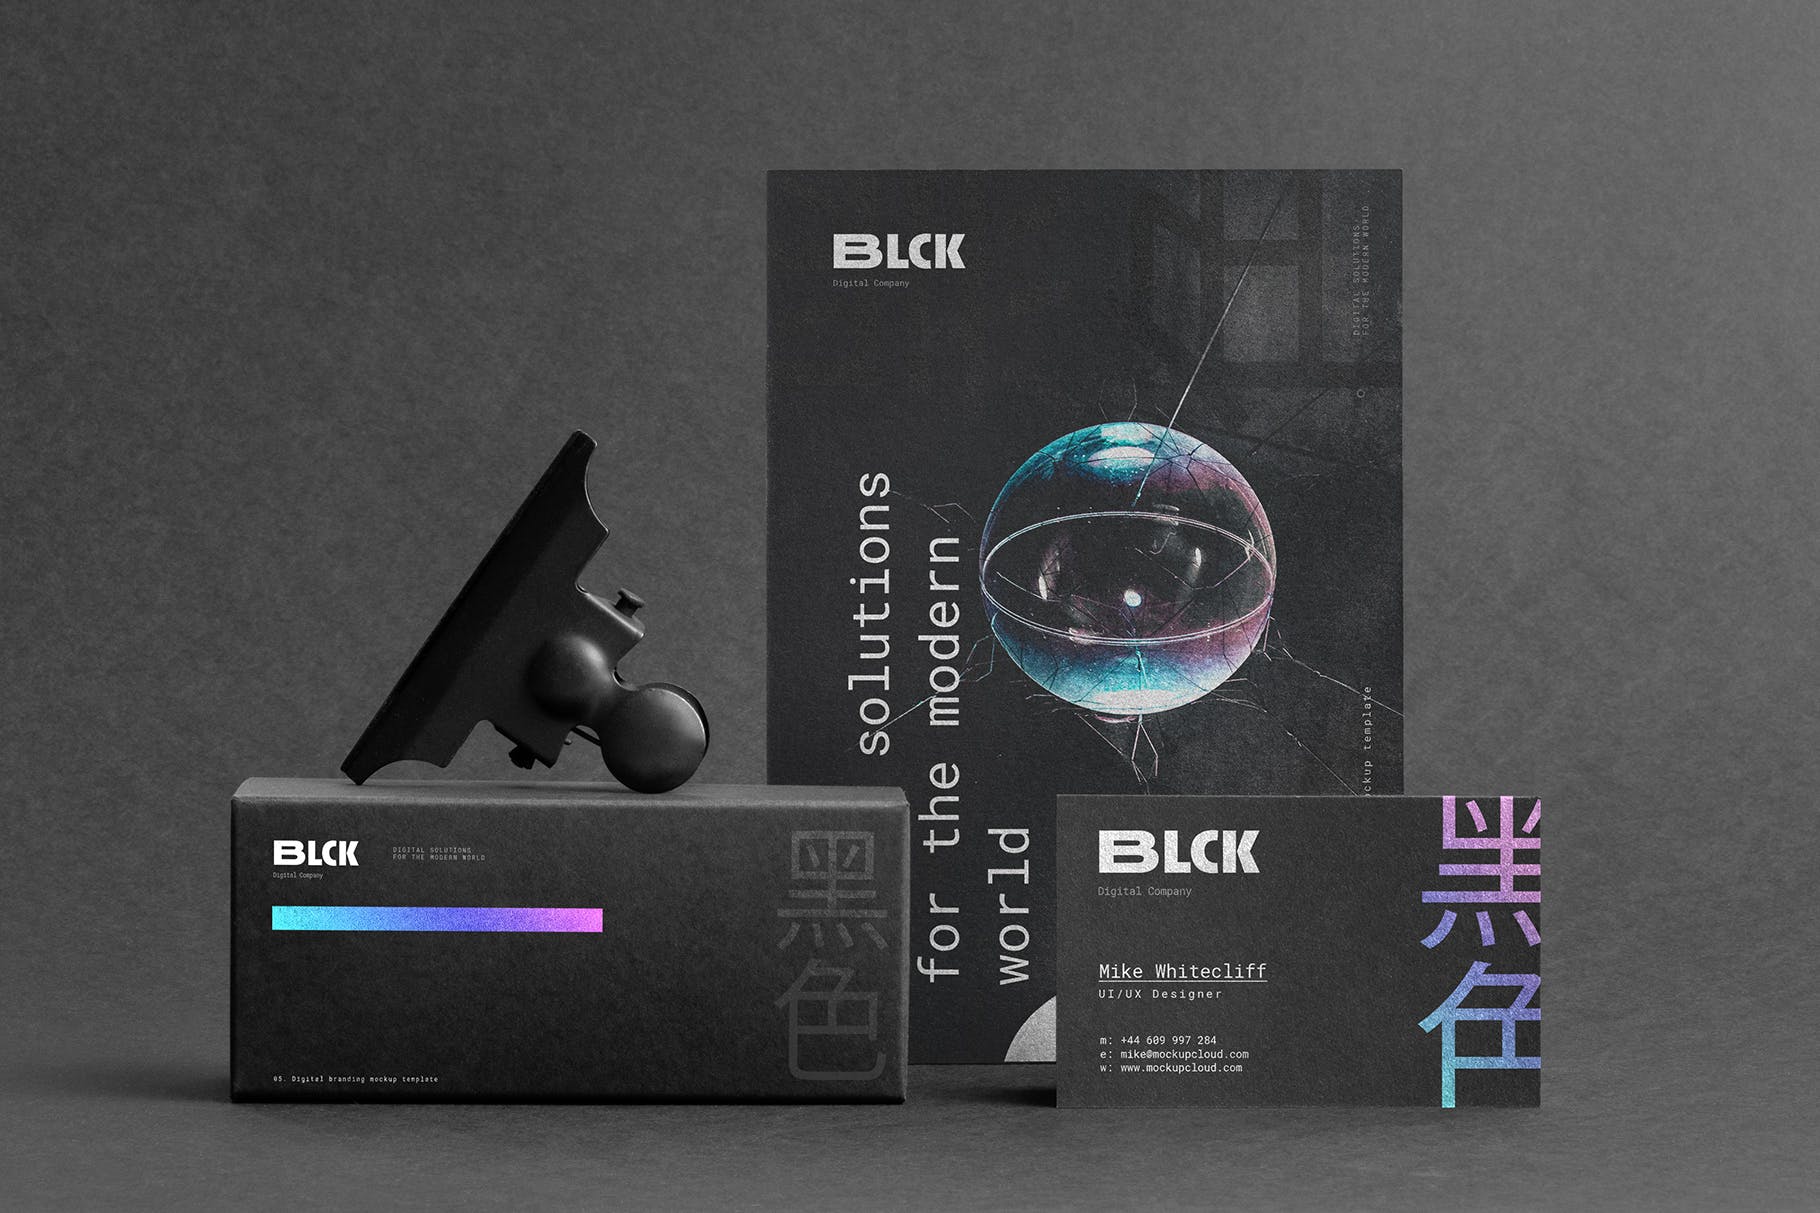 高端黑办公用品套装品牌VI设计效果图样机 Blck Branding Mockup Kit插图(11)